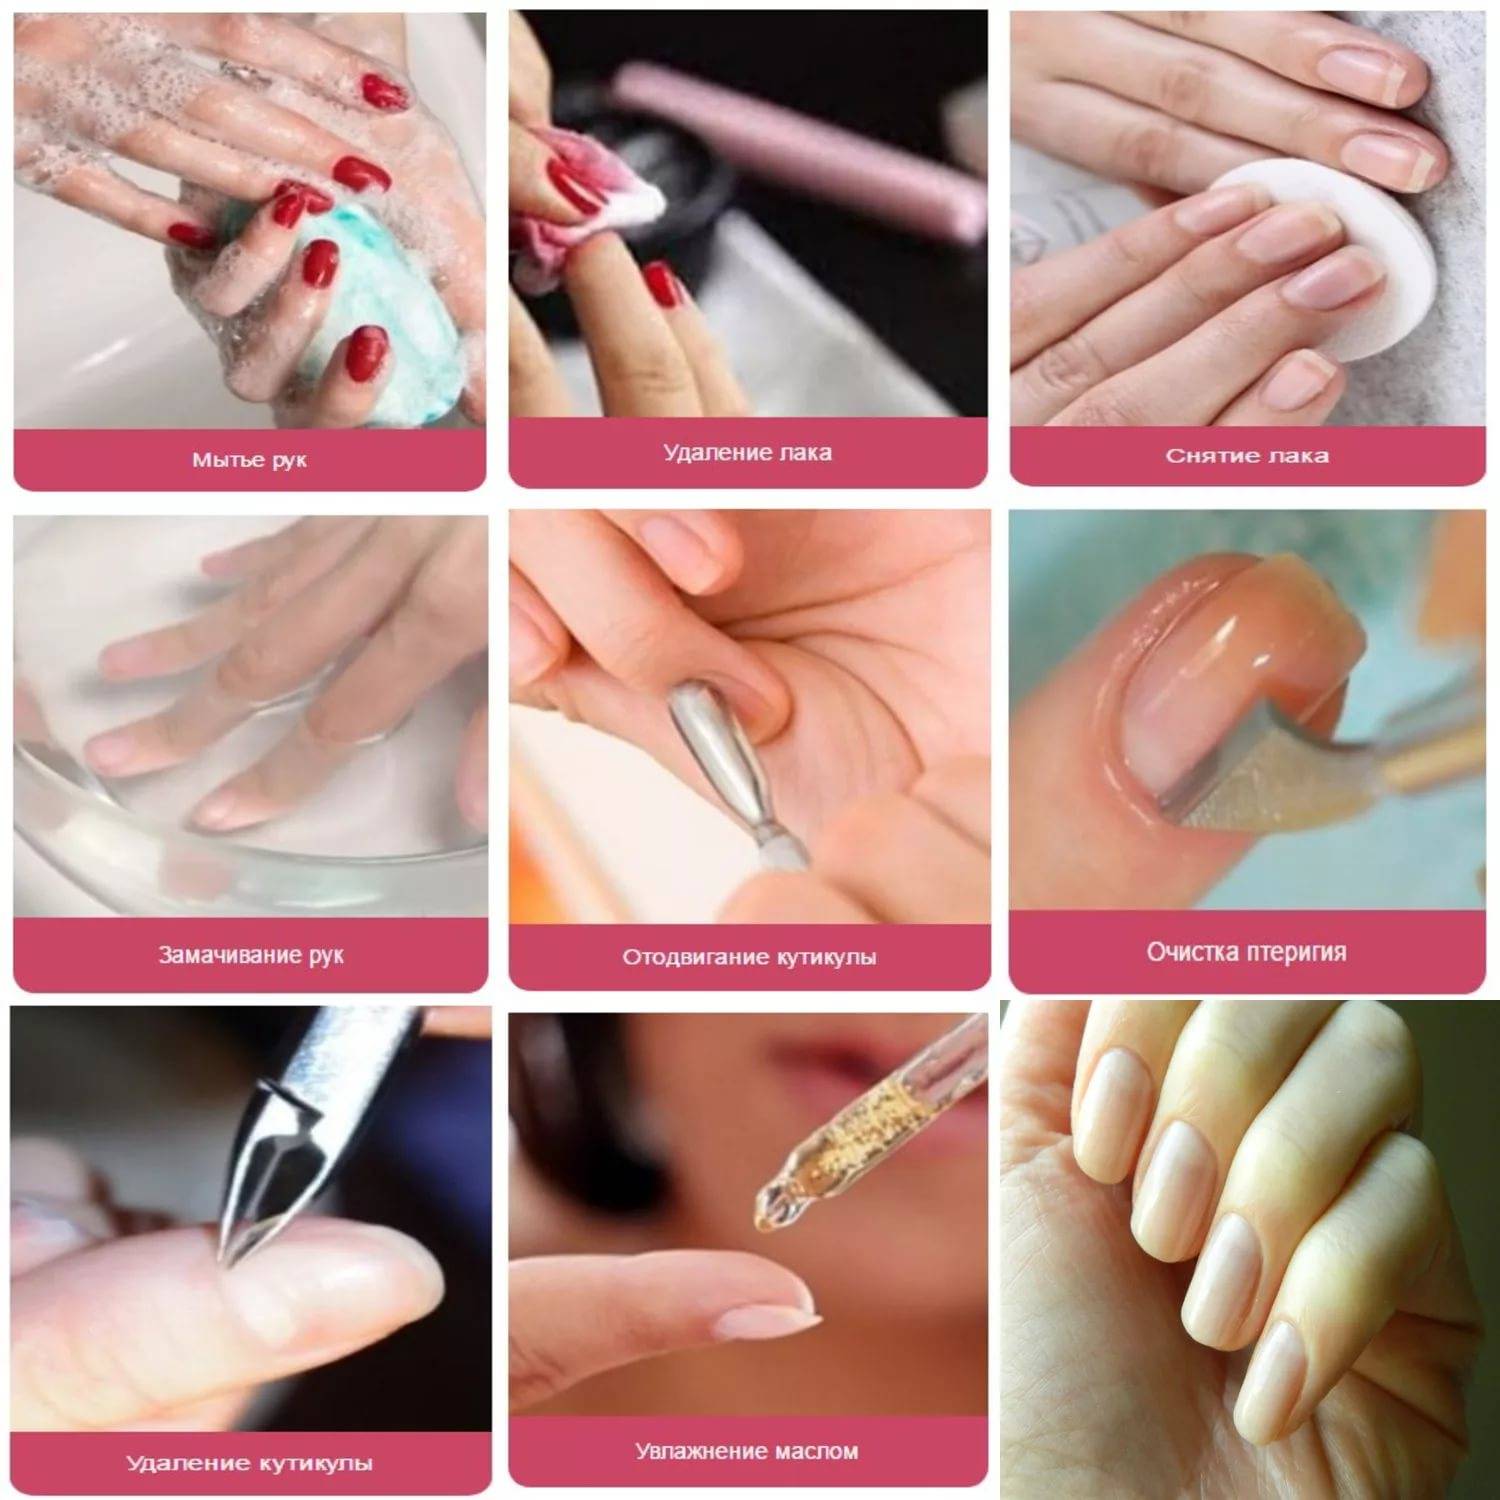 Трафареты для ногтей своими руками: как правильно сделать? как пользоваться трафаретом для ногтей в домашних условиях?